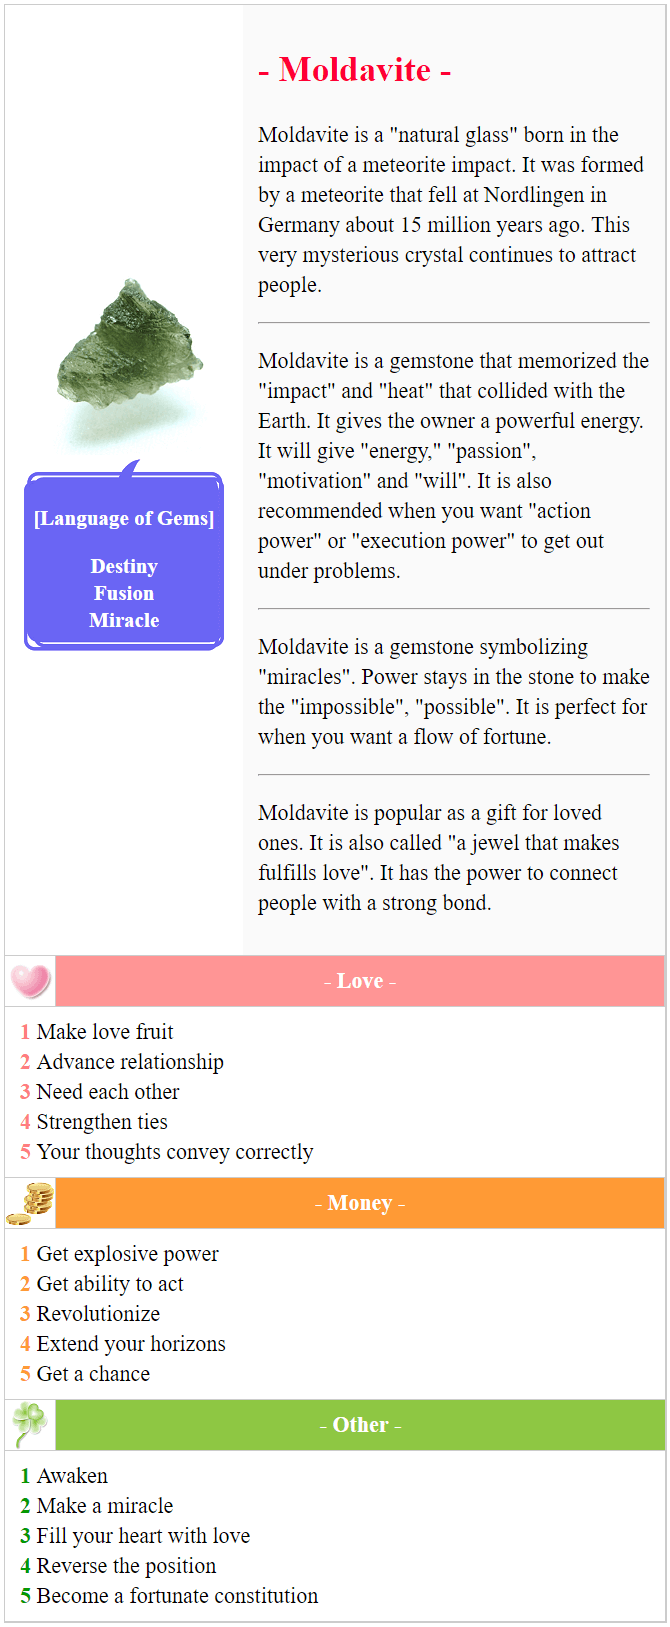 Moldavite meaning